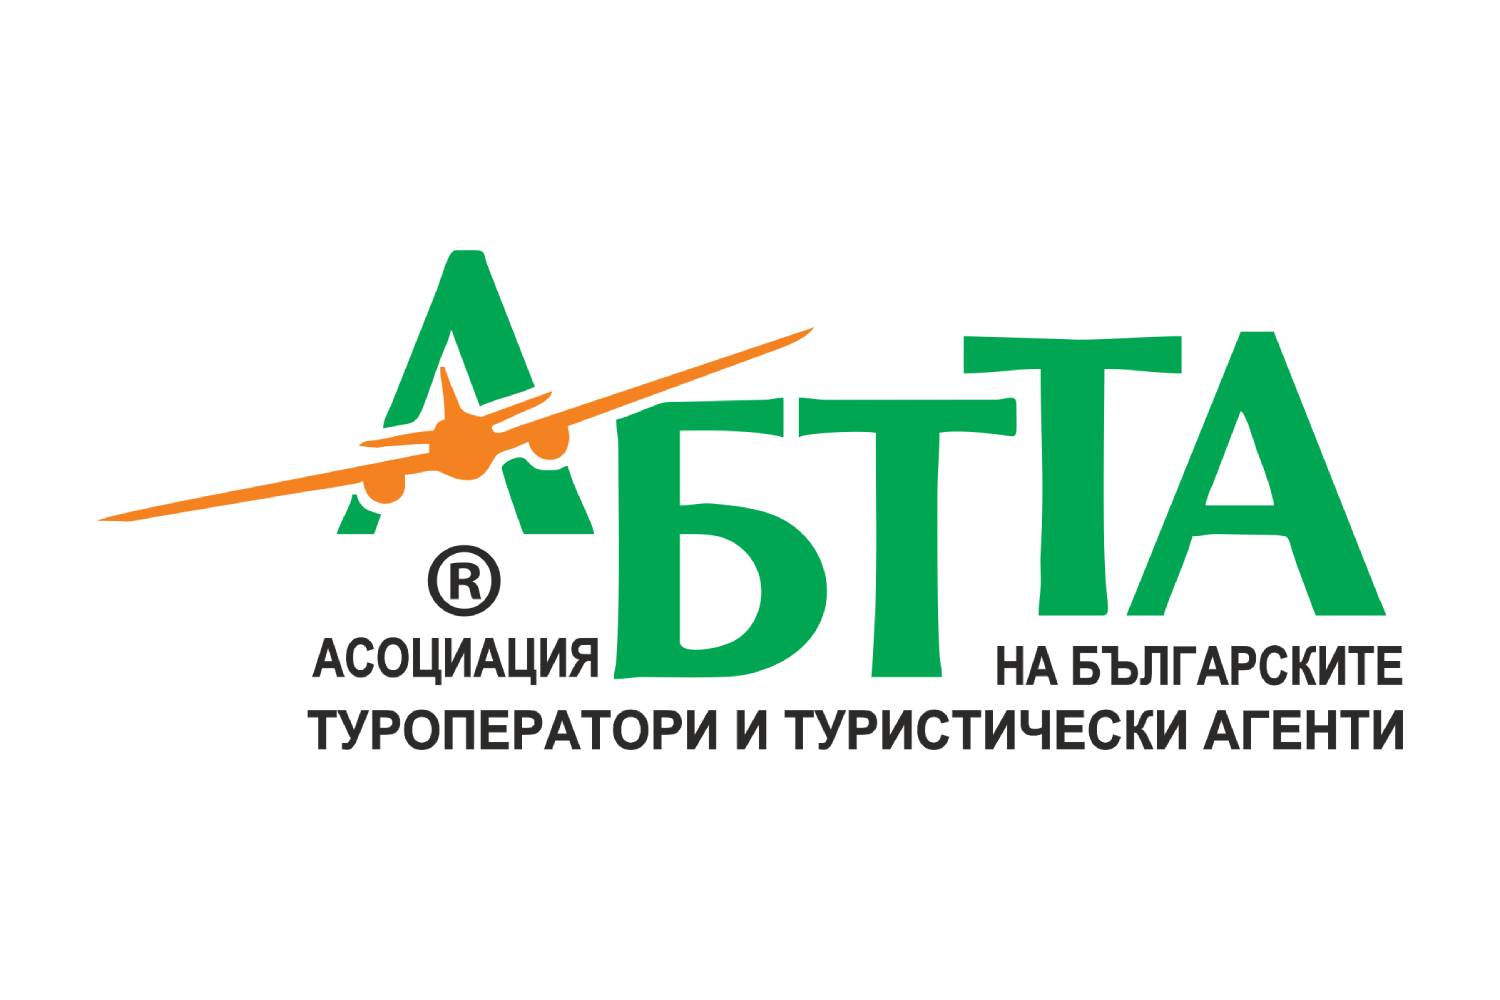 АБТТА ще участва в управлението на професионалната организация на европейския туризъм в следващите две години